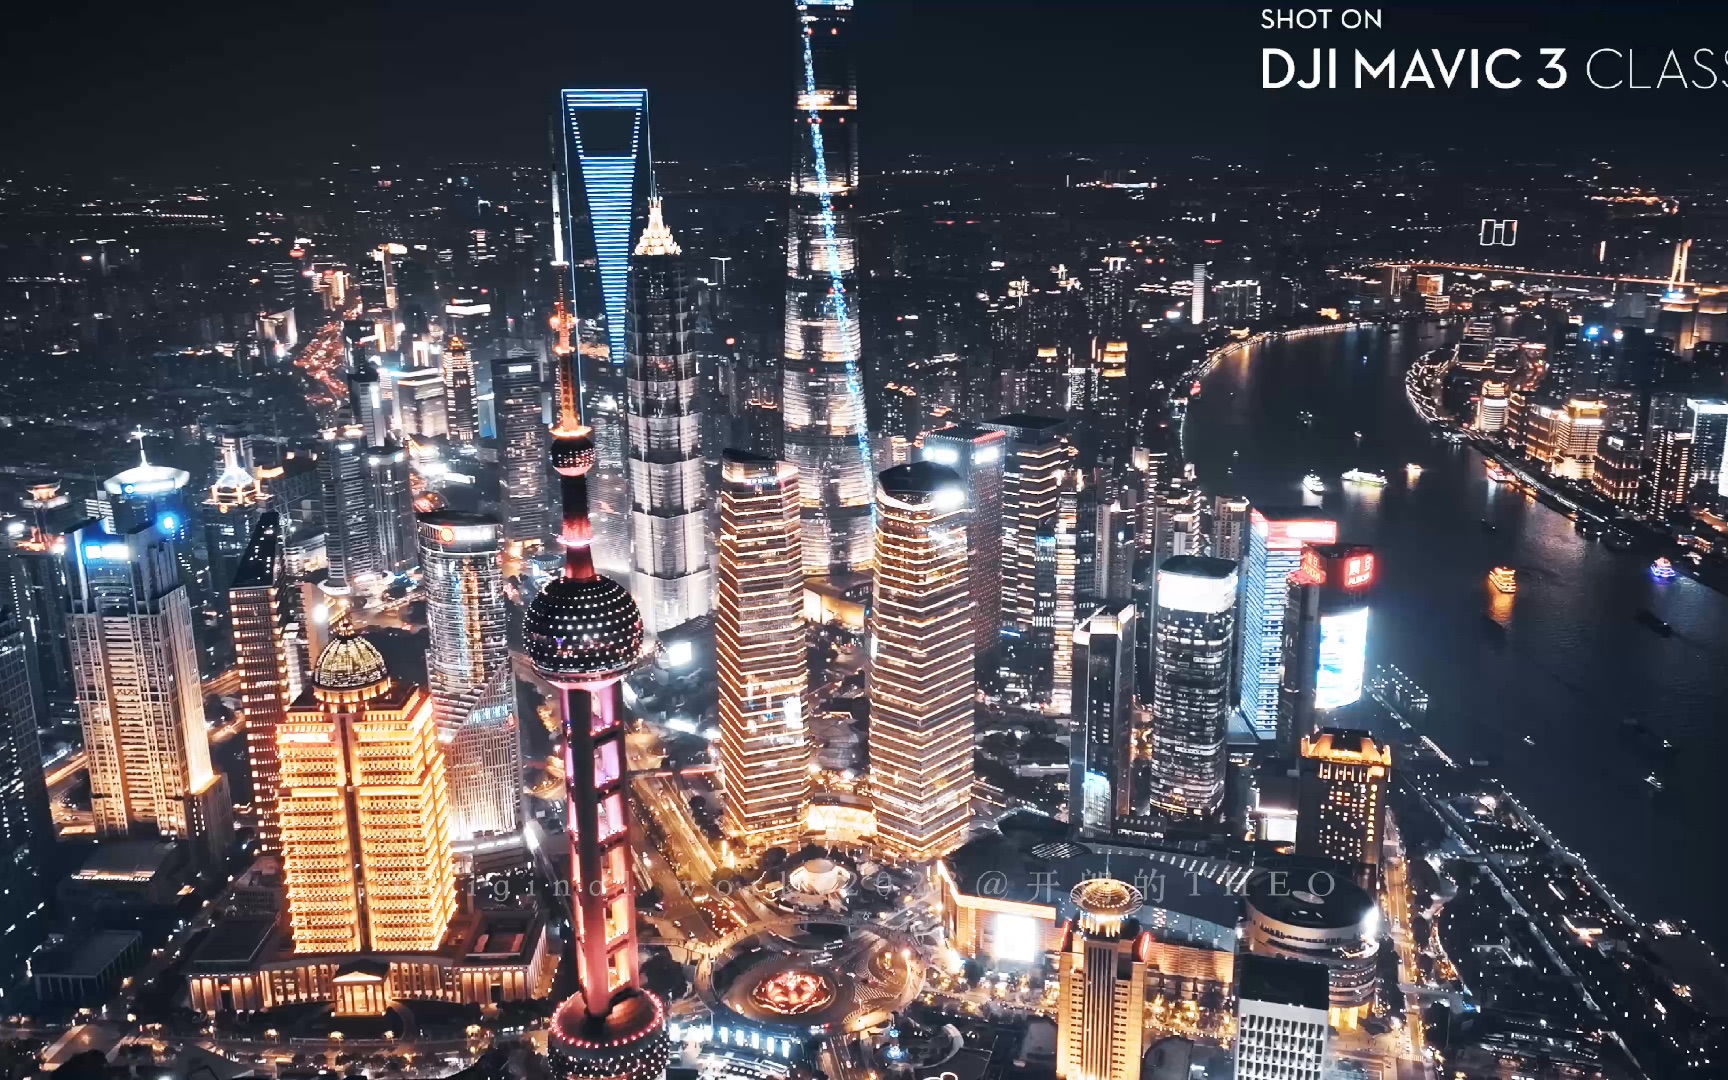 欢迎来到魔都——上海，感受一下世界一线城市的繁华夜景